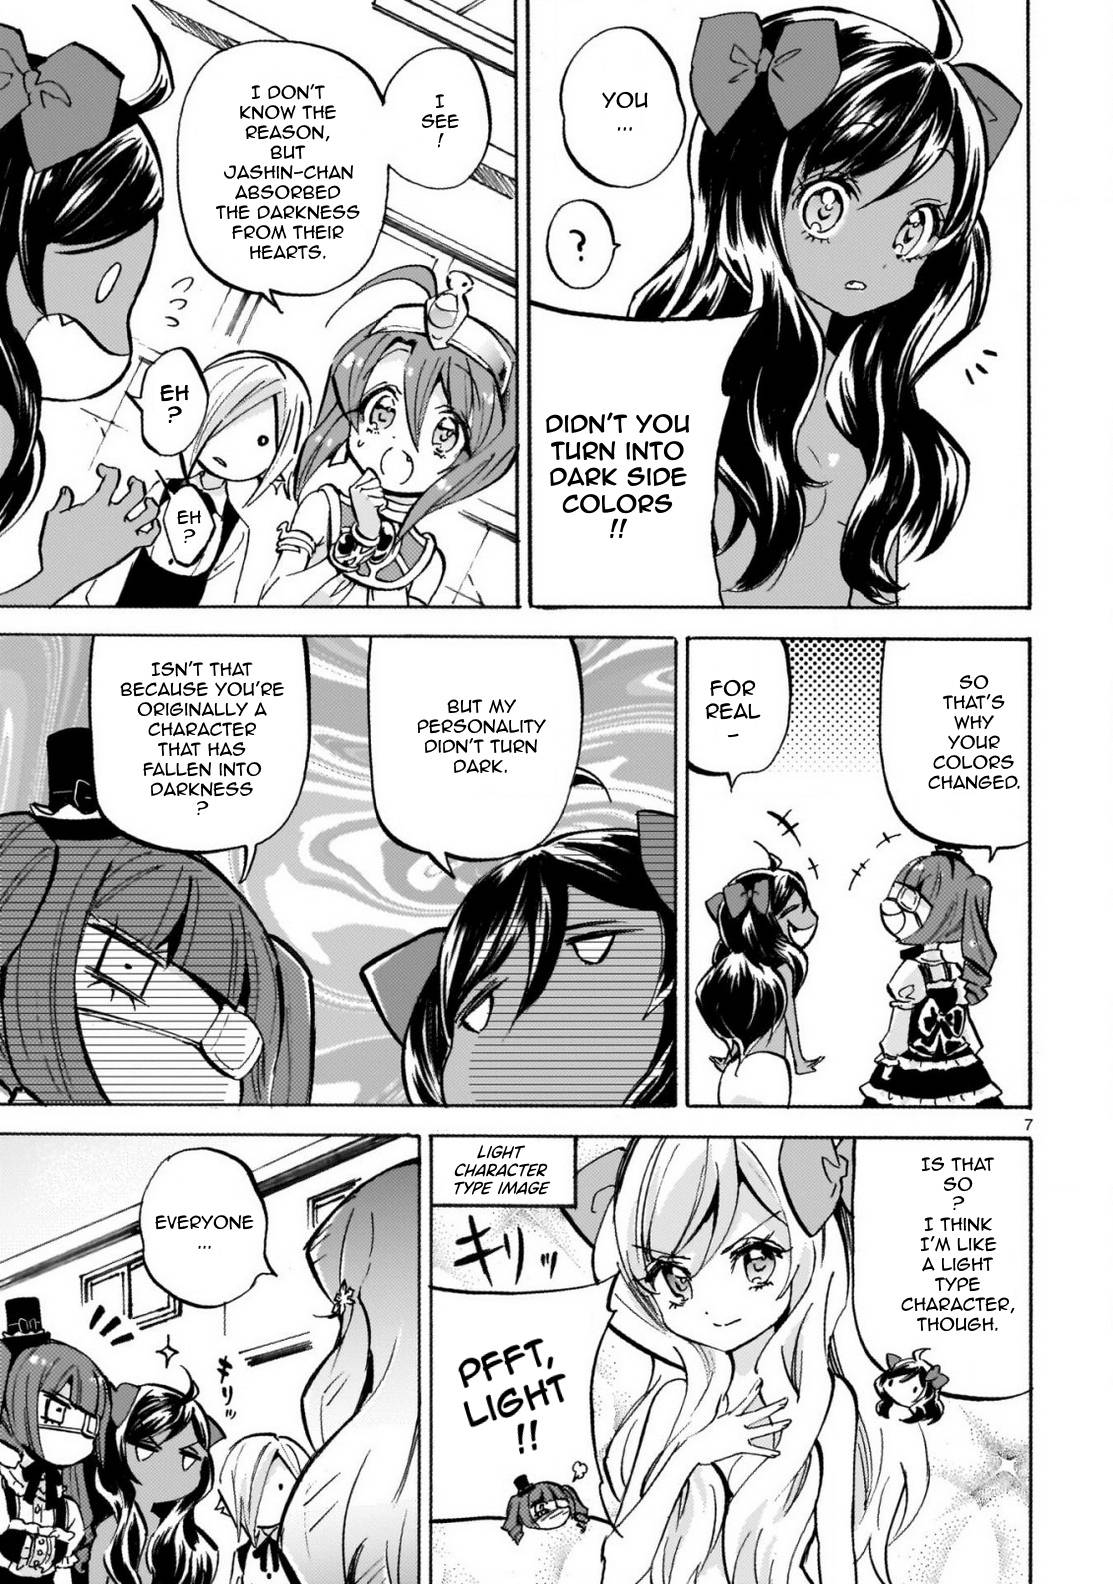 Jashin-chan Dropkick chapter 239 page 7